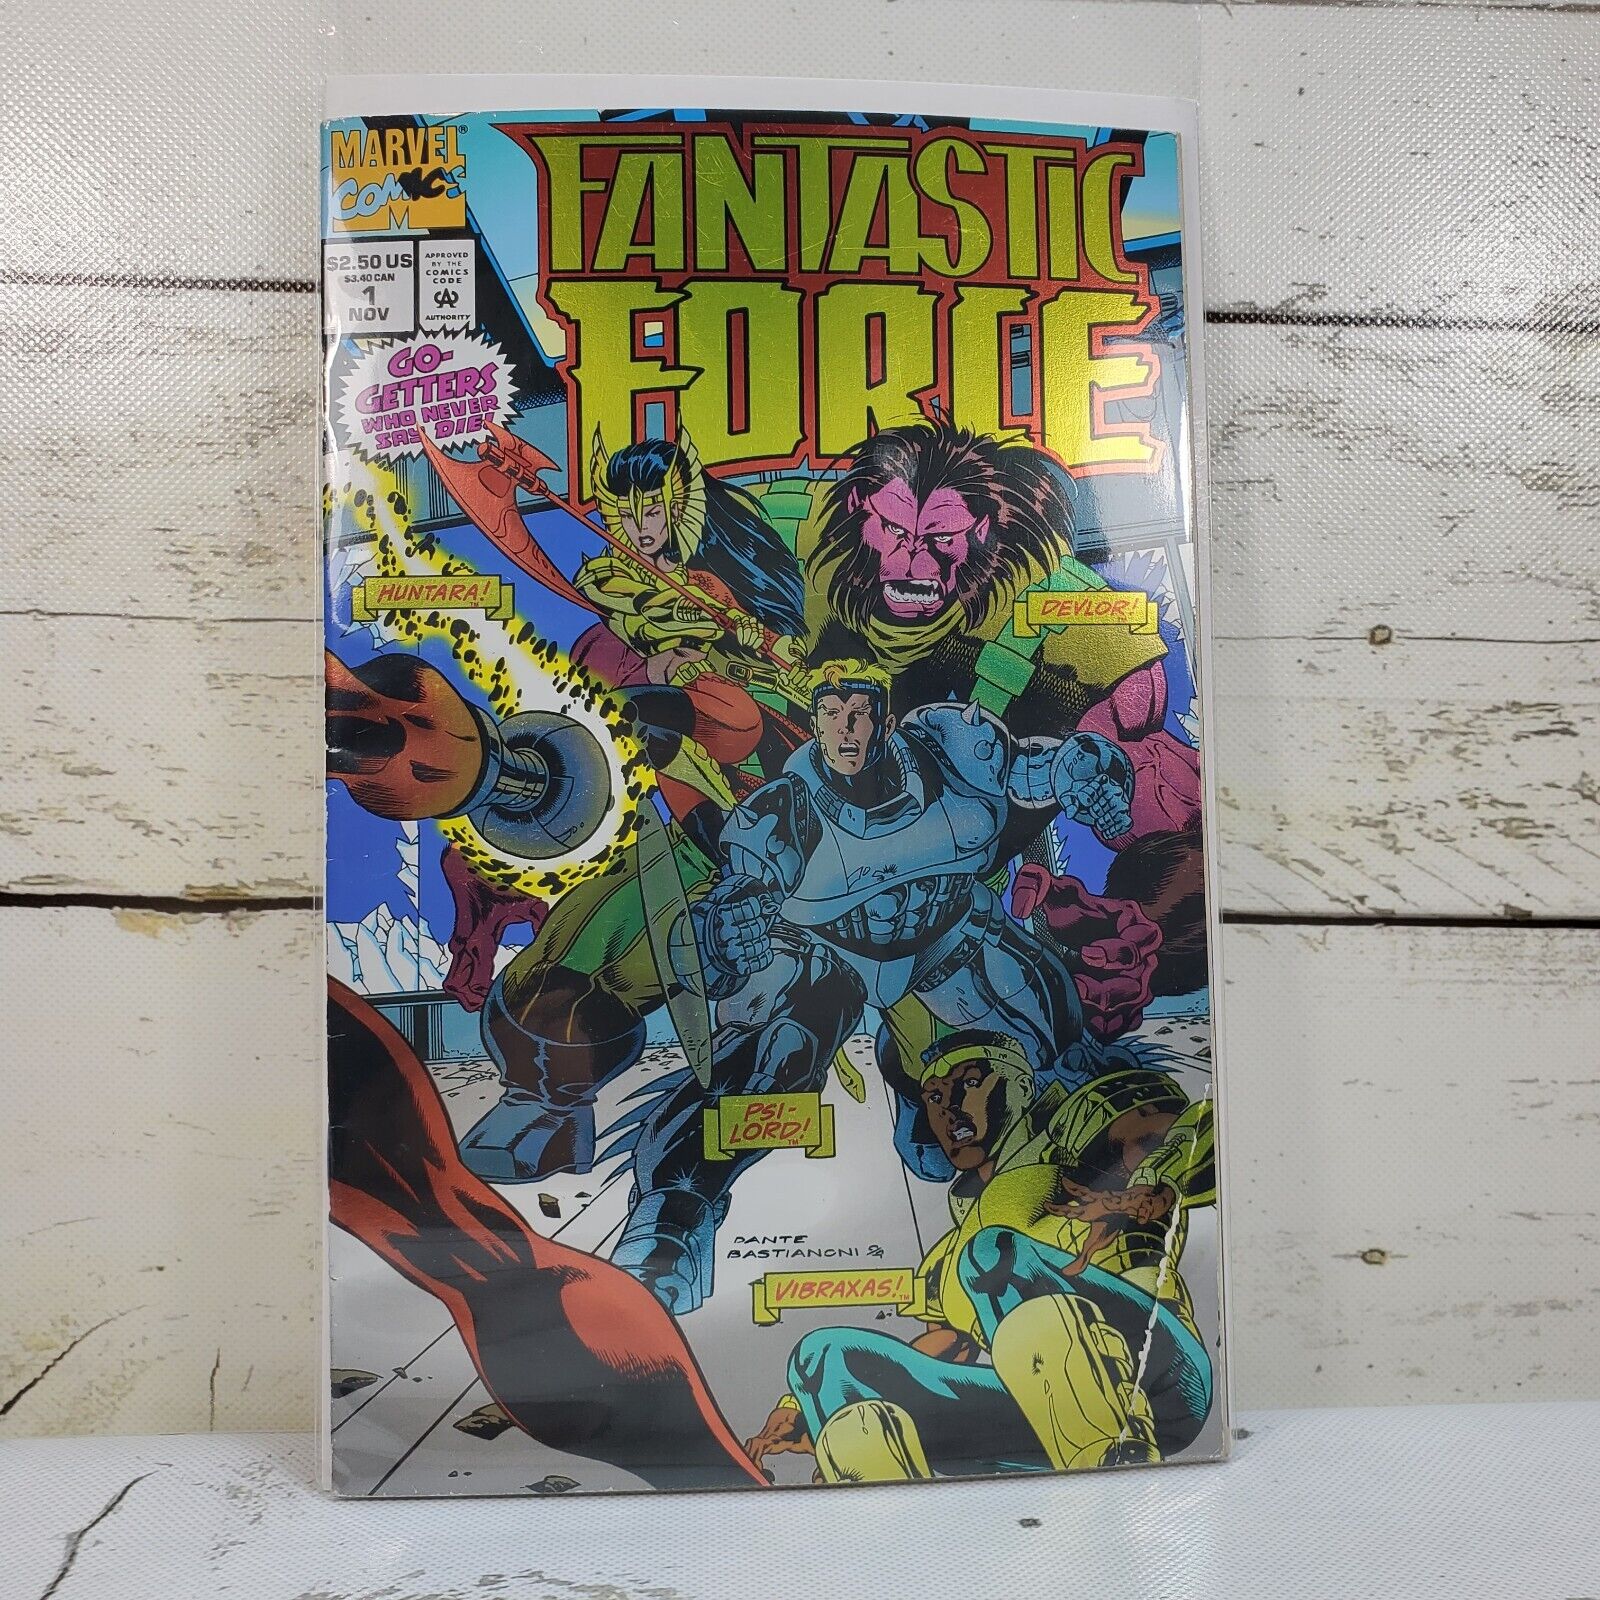 Marvel Comics Fantastic Force #1 1994 Vol. 1 Vintage Comic Book Sleeved Boarded